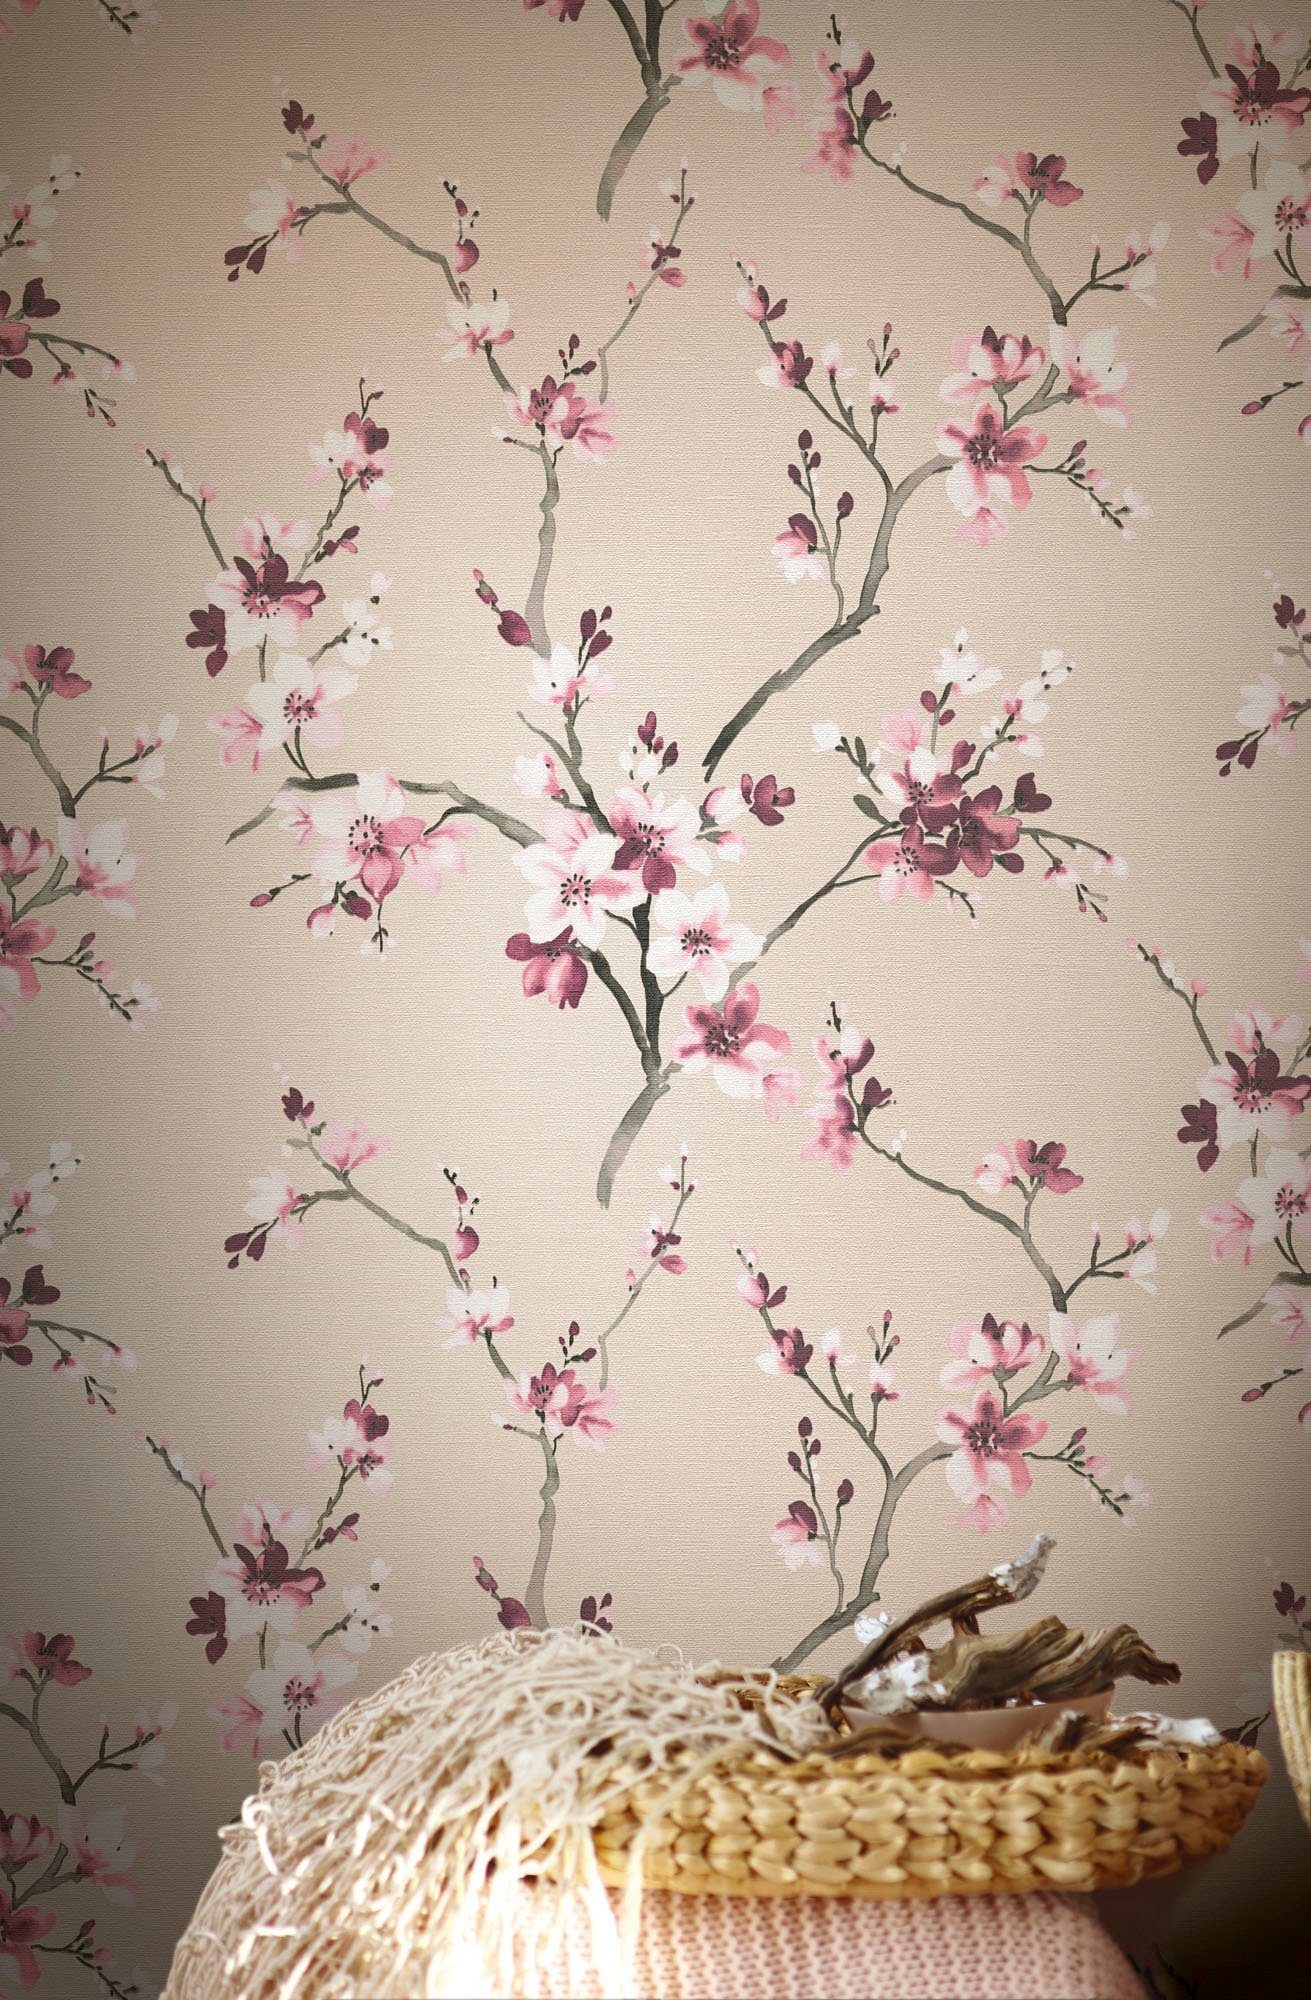 walls floral, natürlich, Vliestapete strukturiert, rosa/beige Tapete Lodge, geblümt, living Desert Blumenoptik